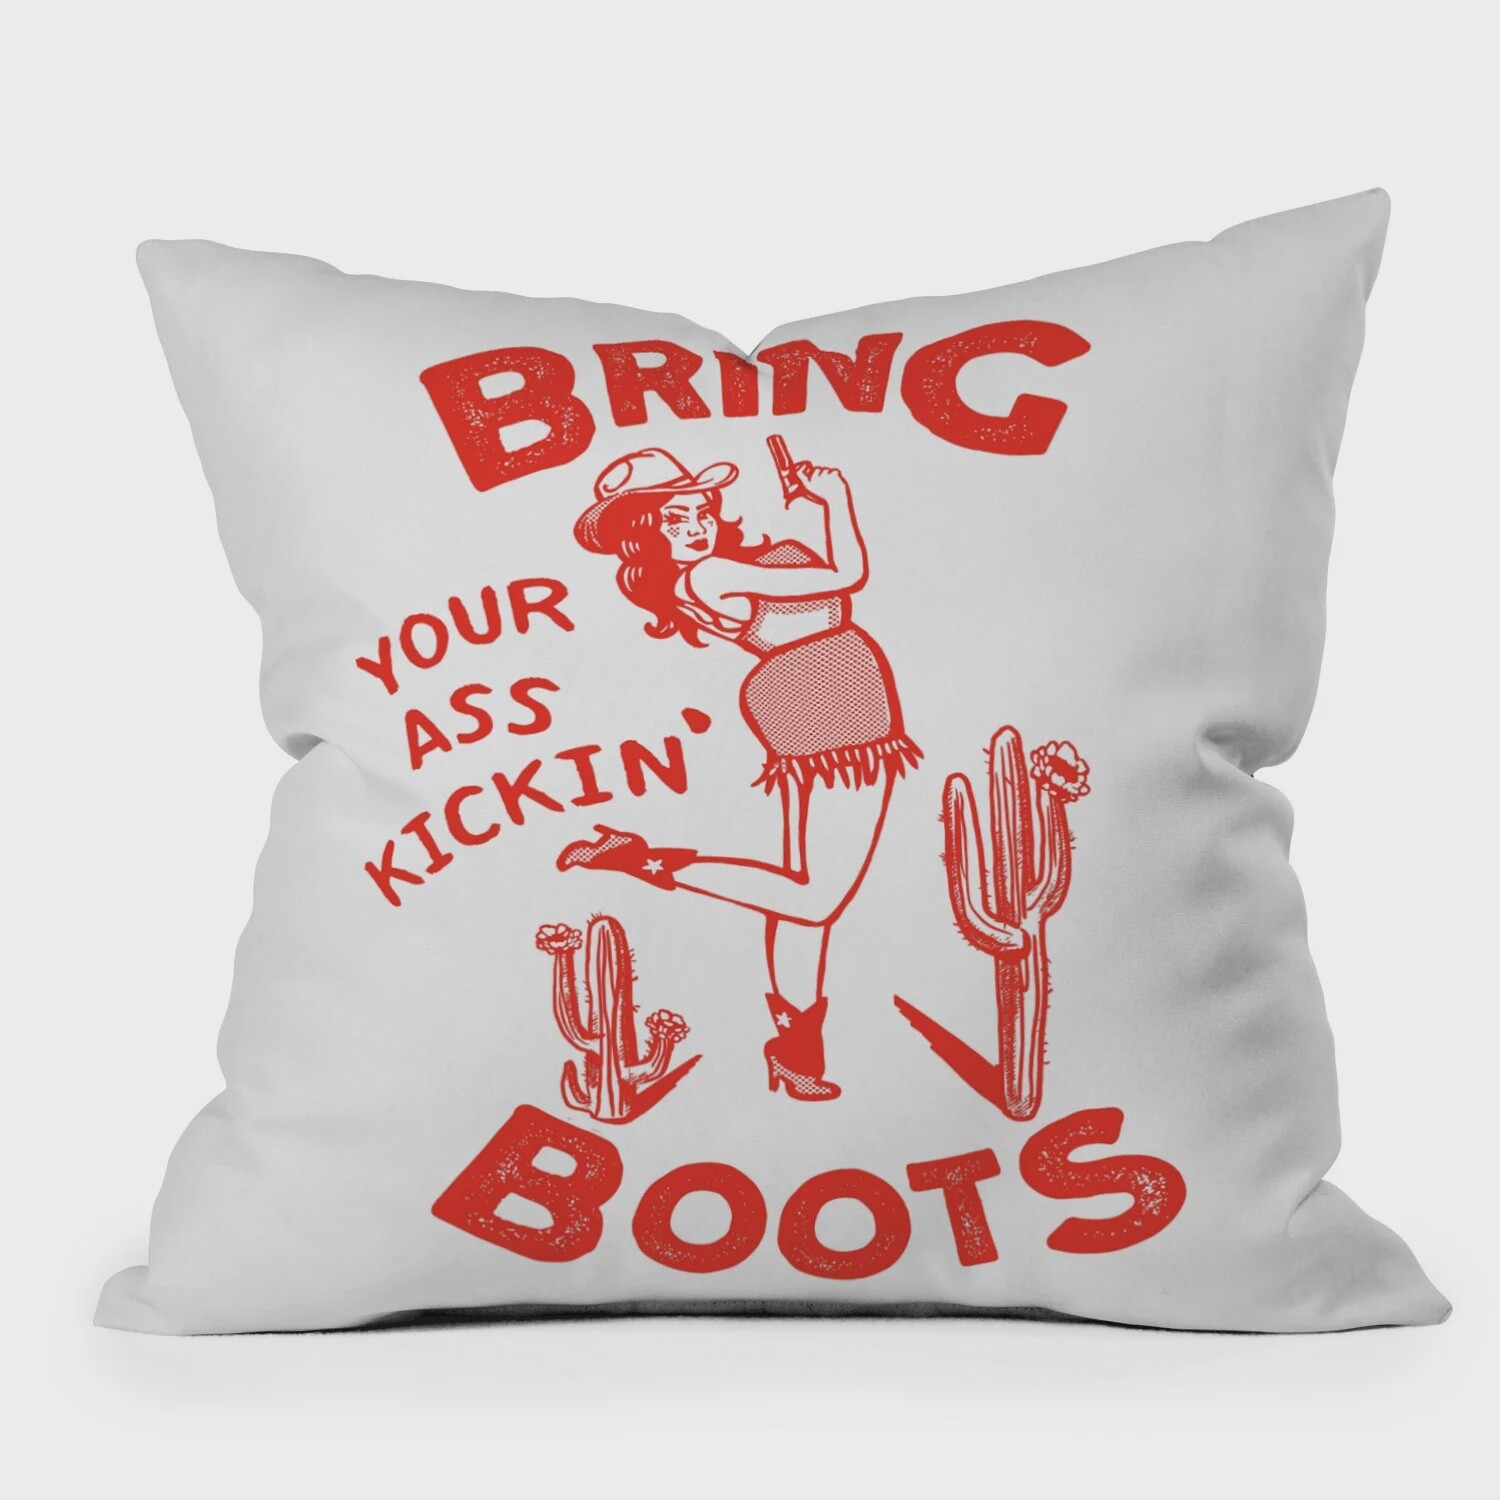 Bring Your Ass Kickin' Boots Pillow